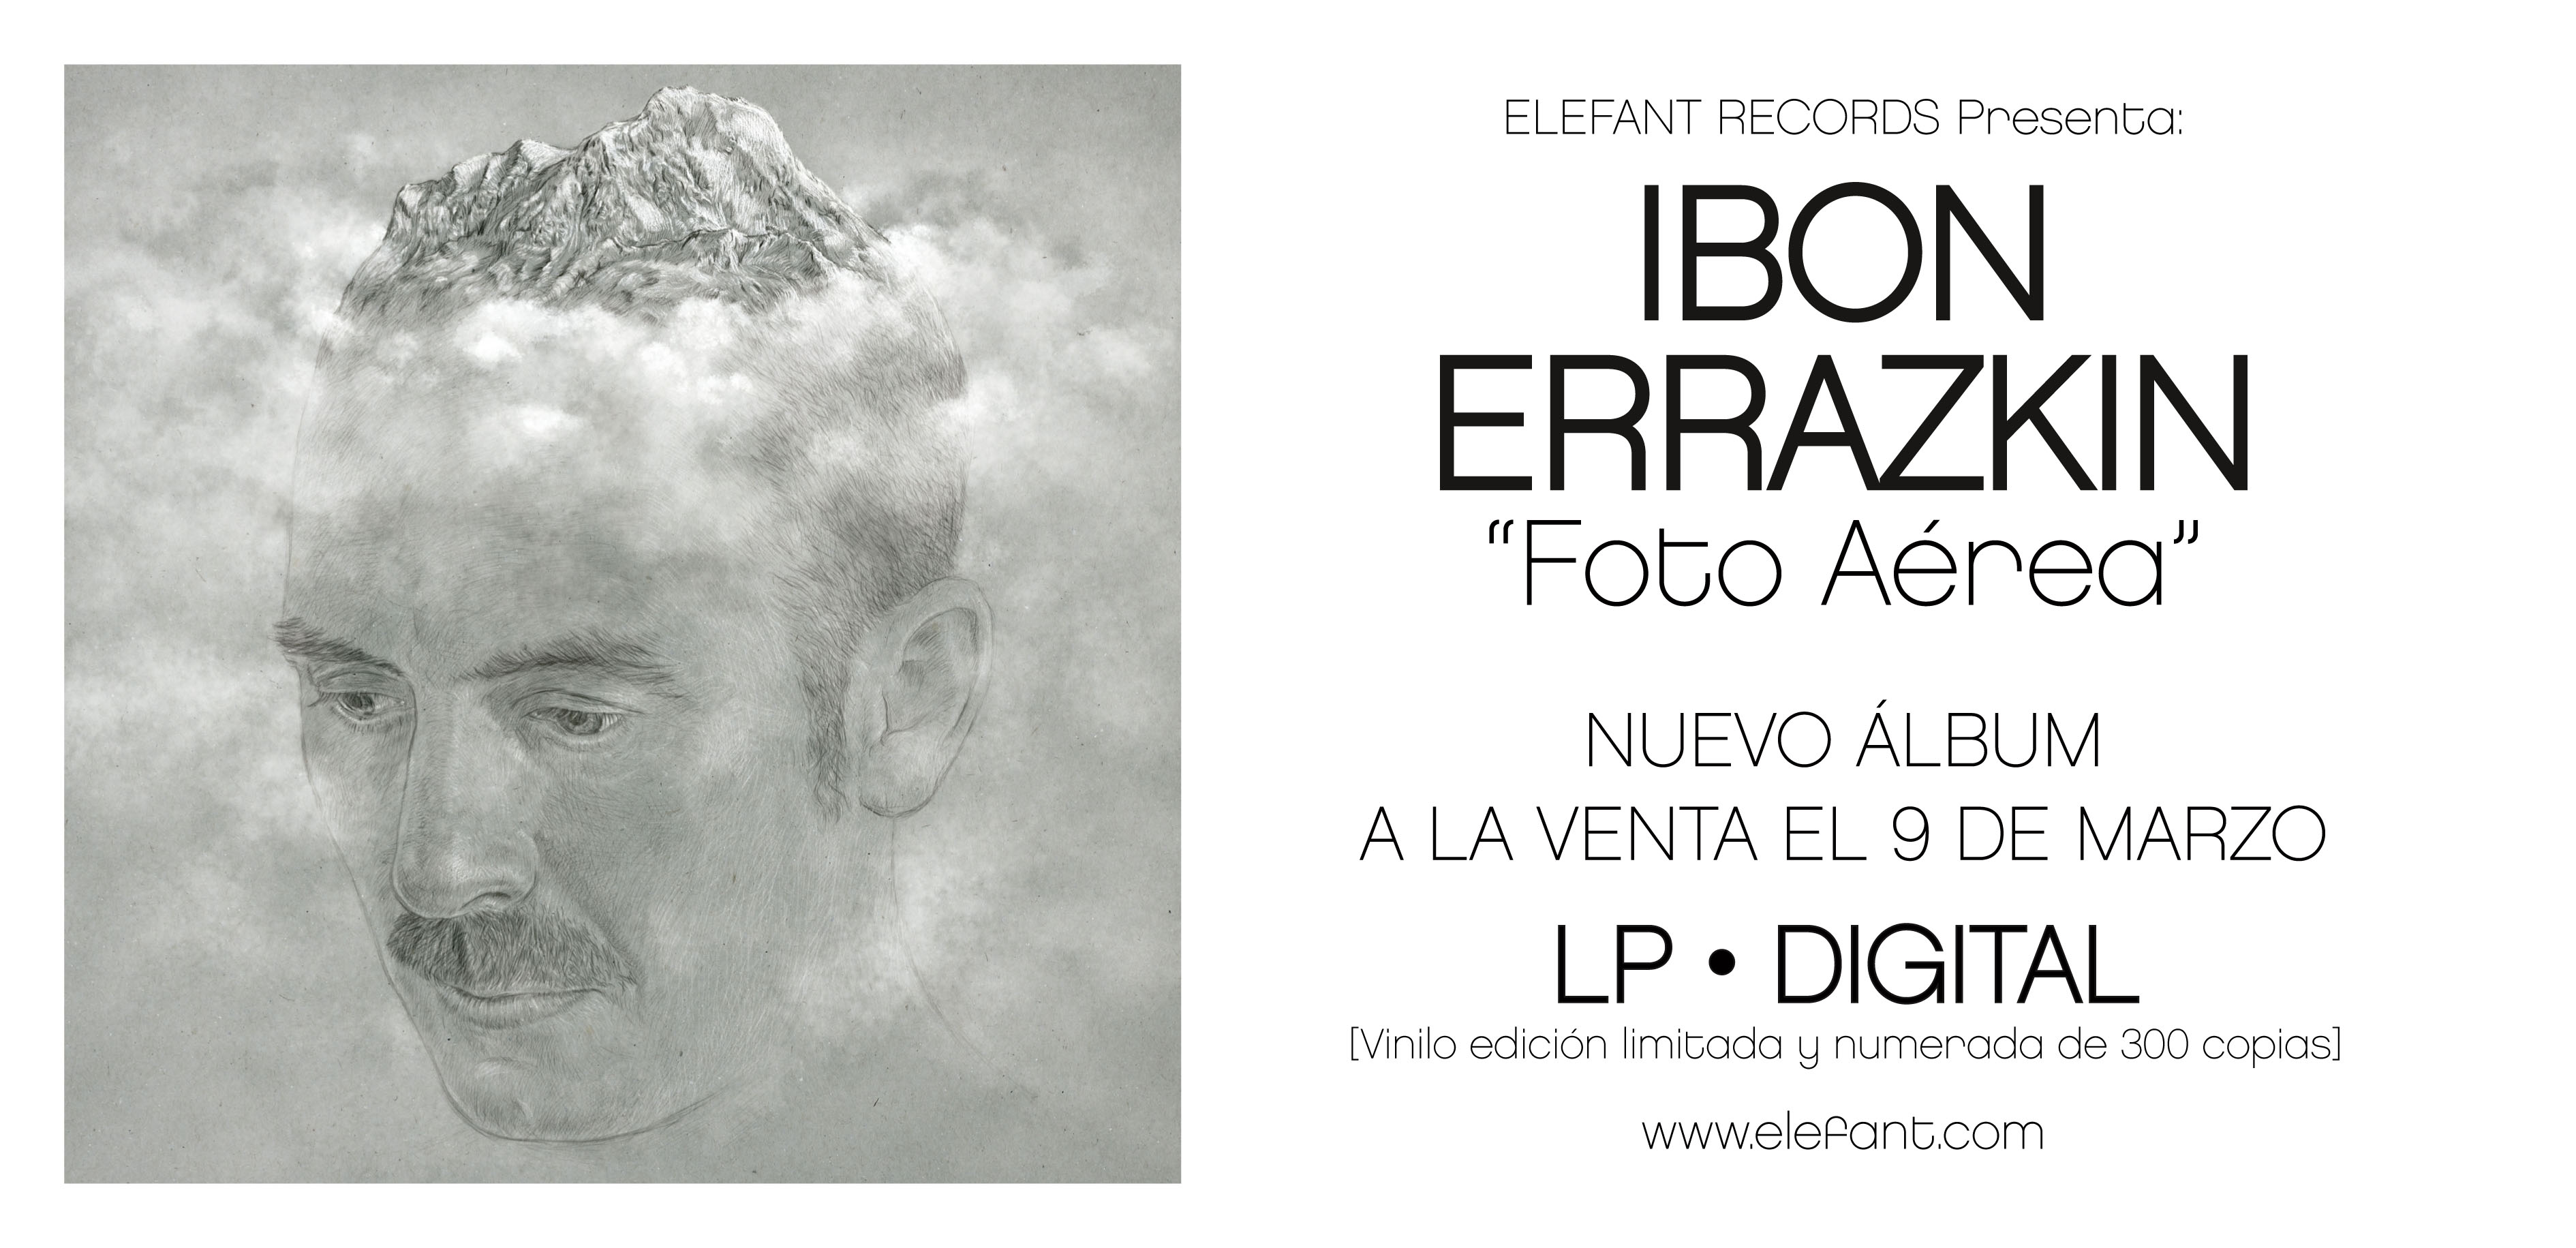 Ibon Errazkin "Foto Aérea" LP